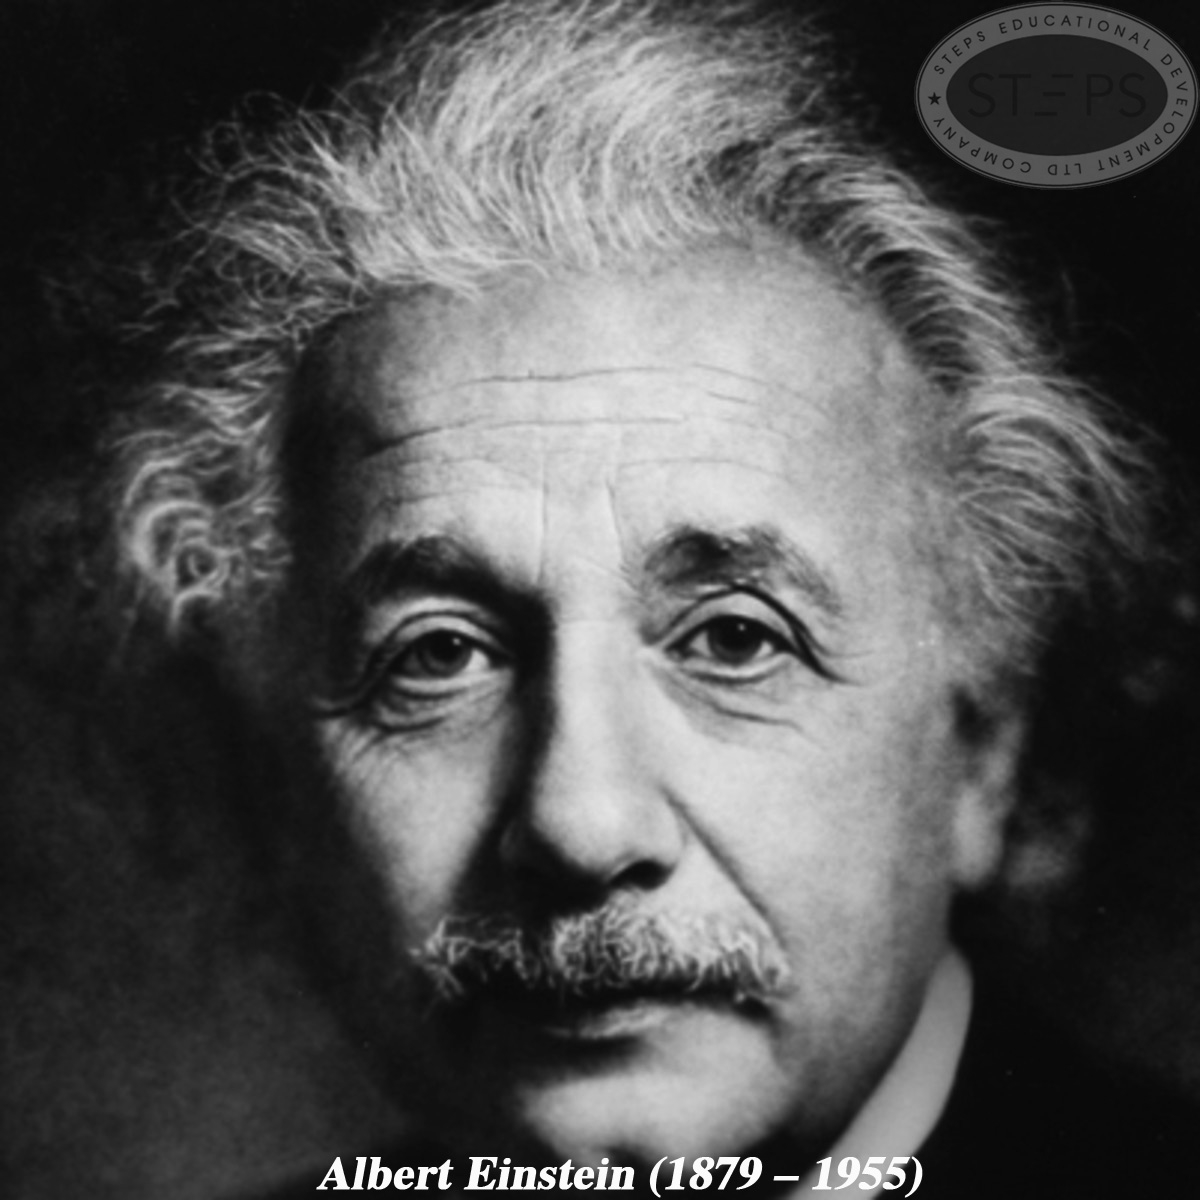 http://www.steps.edu.vn/Albert Einstein